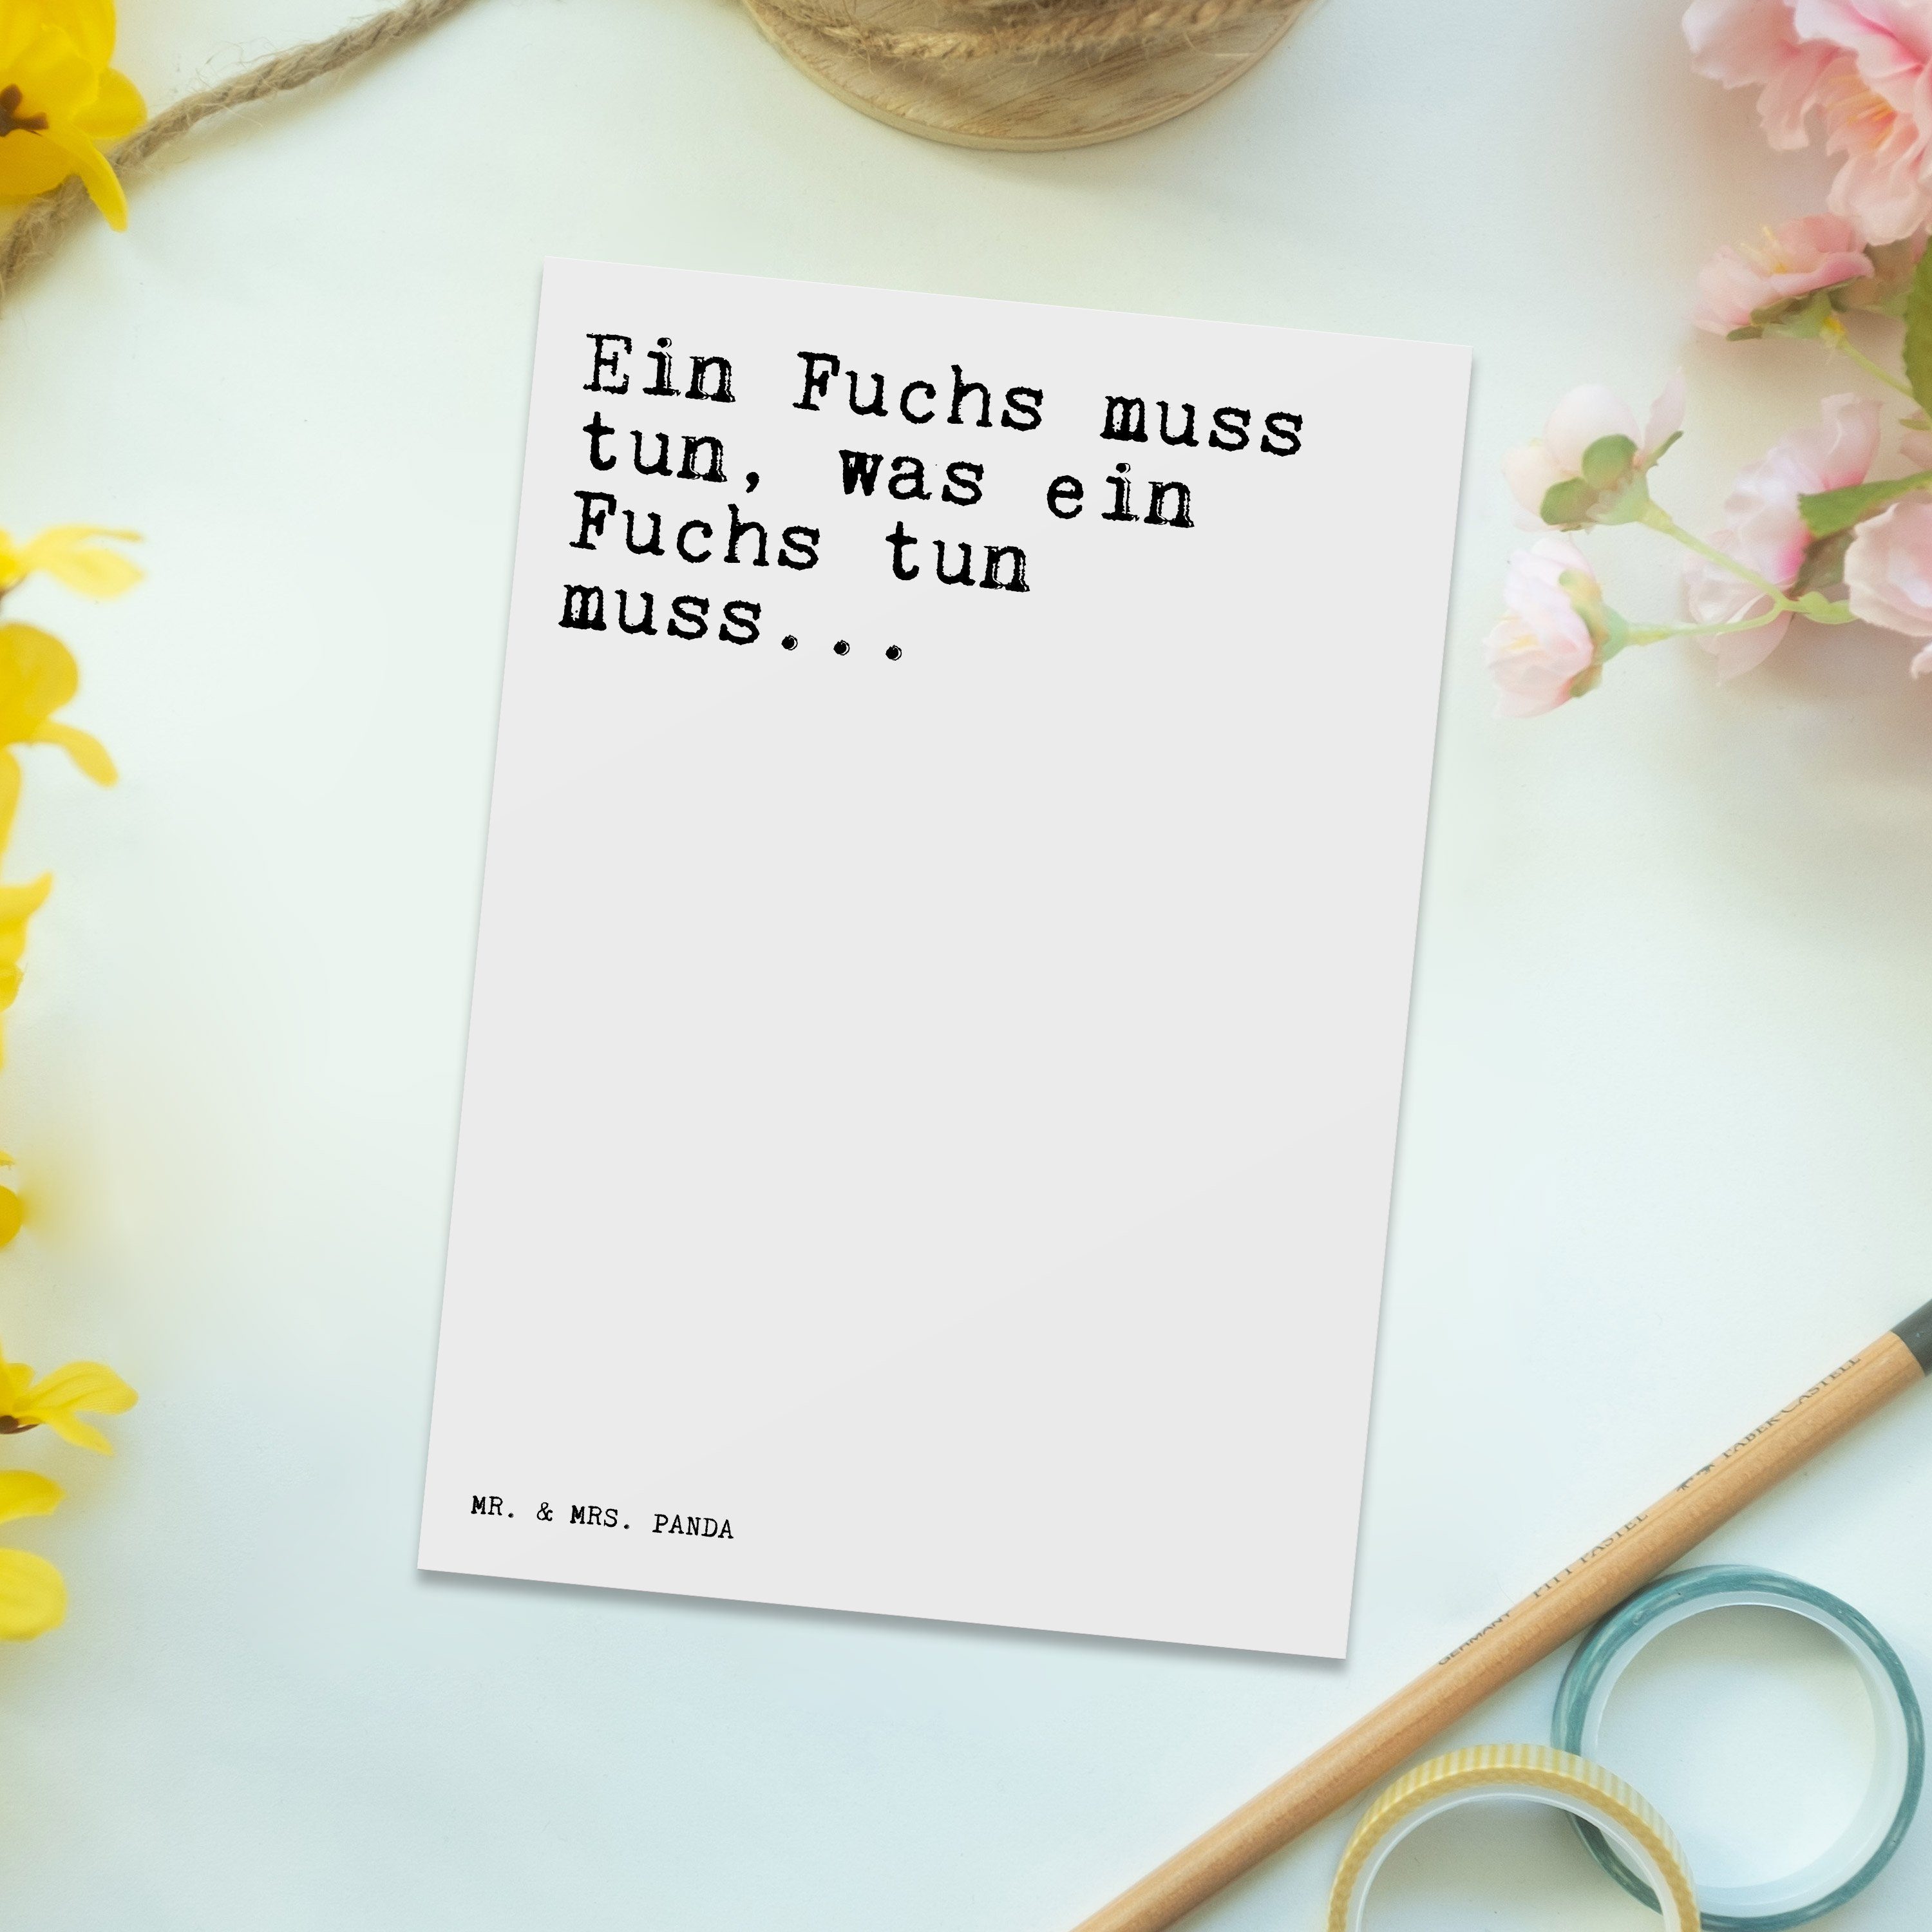 Zitate, Postkarte Ein tun,... Fuchs - - & Weisheiten Geschenk, Weiß muss Panda Spruch, Mrs. Mr.